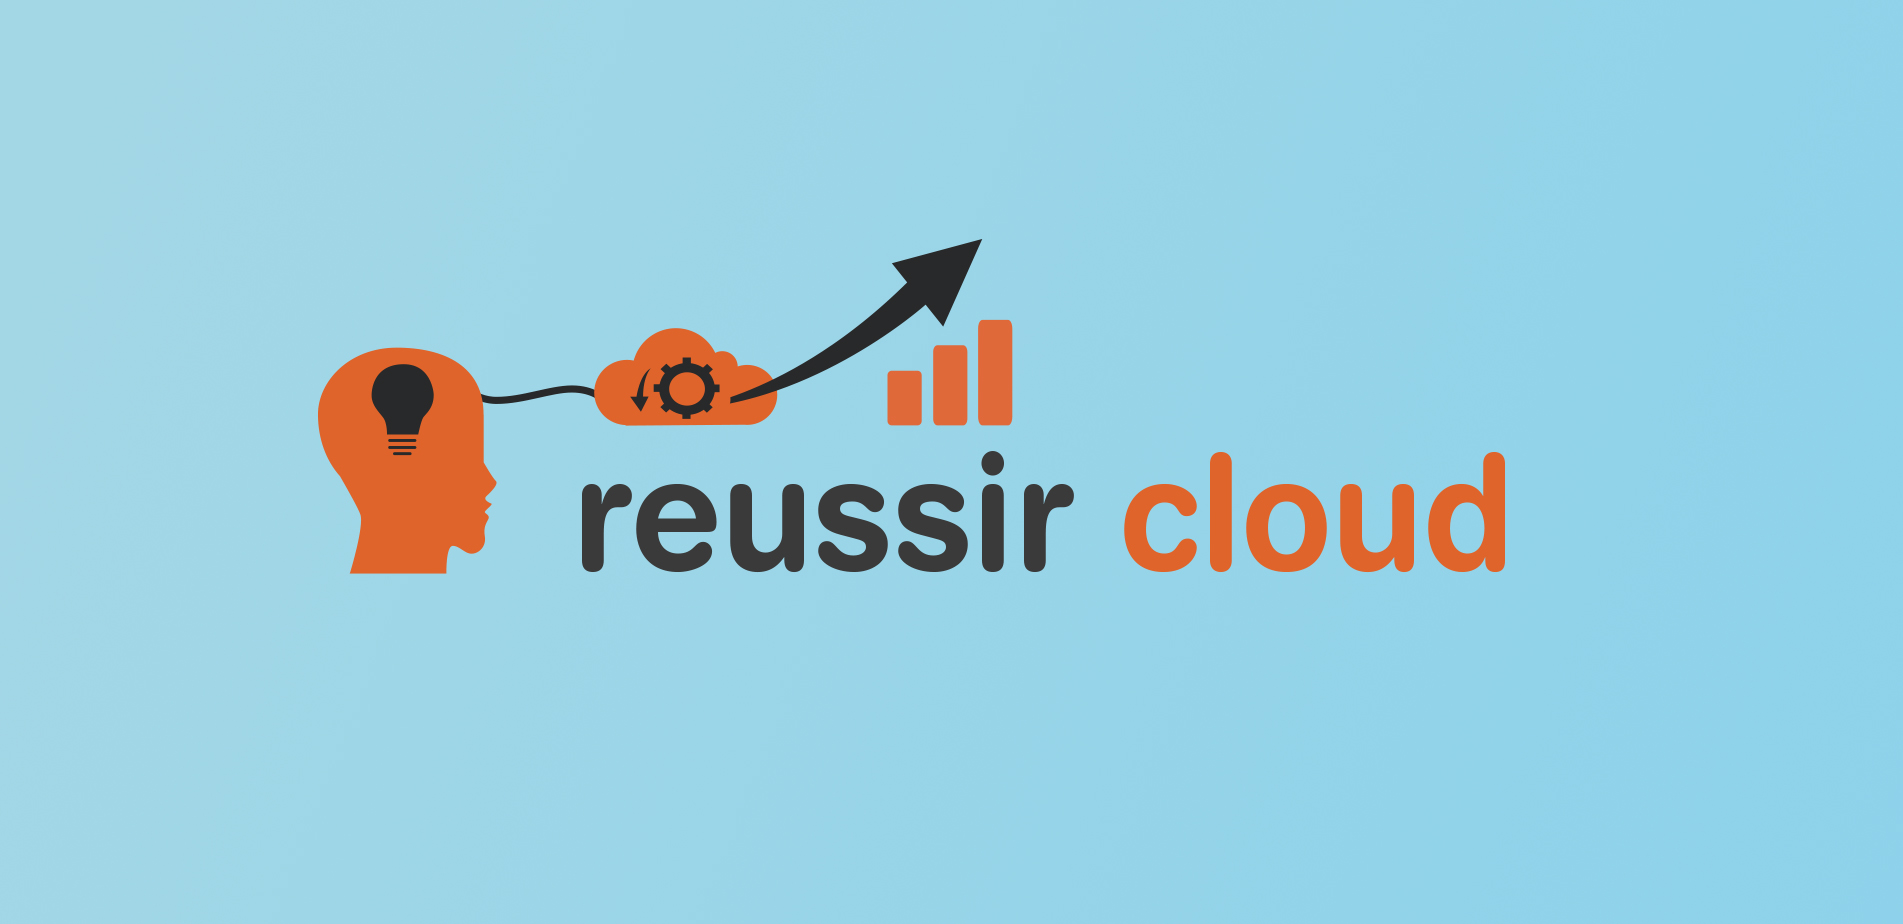 reussir cloud